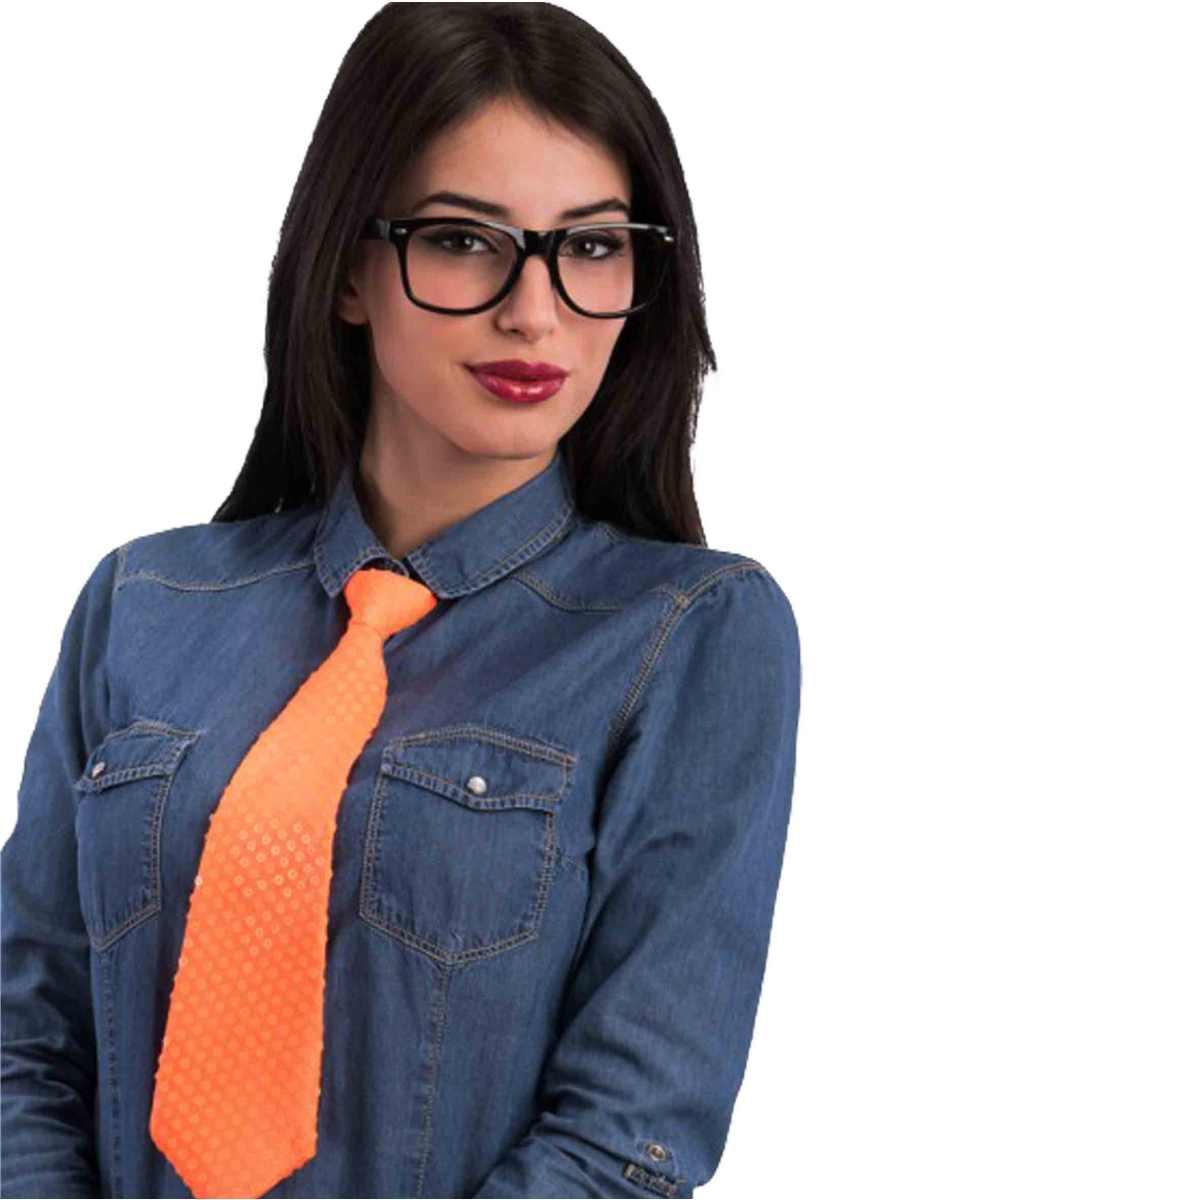 Cravatta in tessuto con paillettes arancione